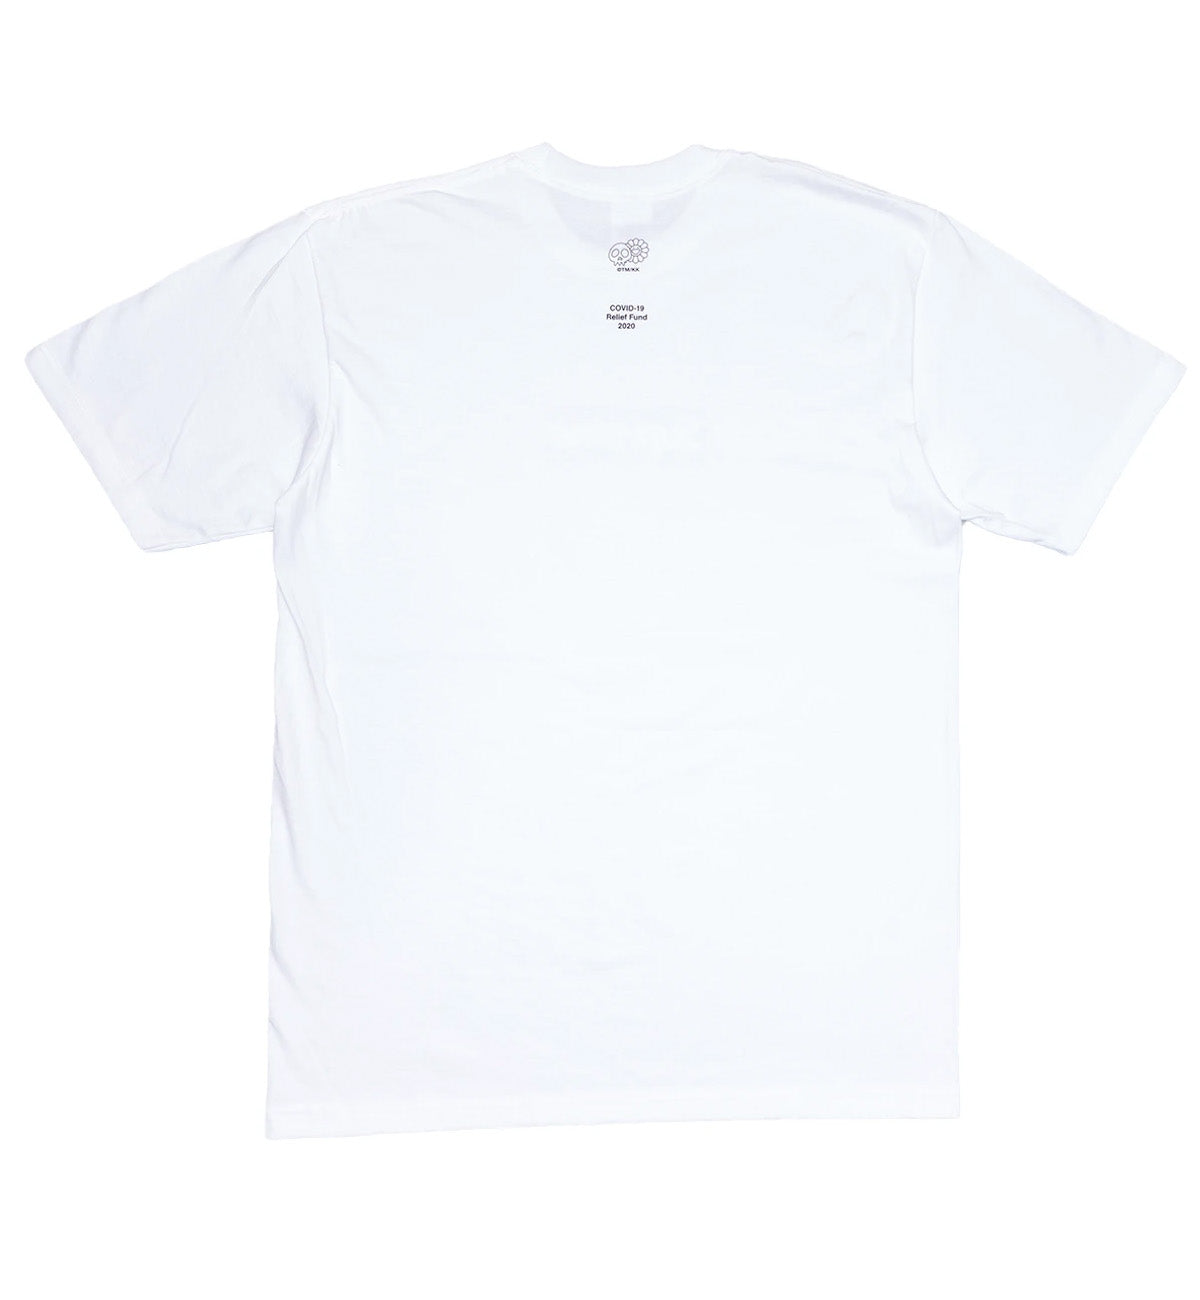 Takashi Murakami X Supreme Covid-19 T-Shirt (White)